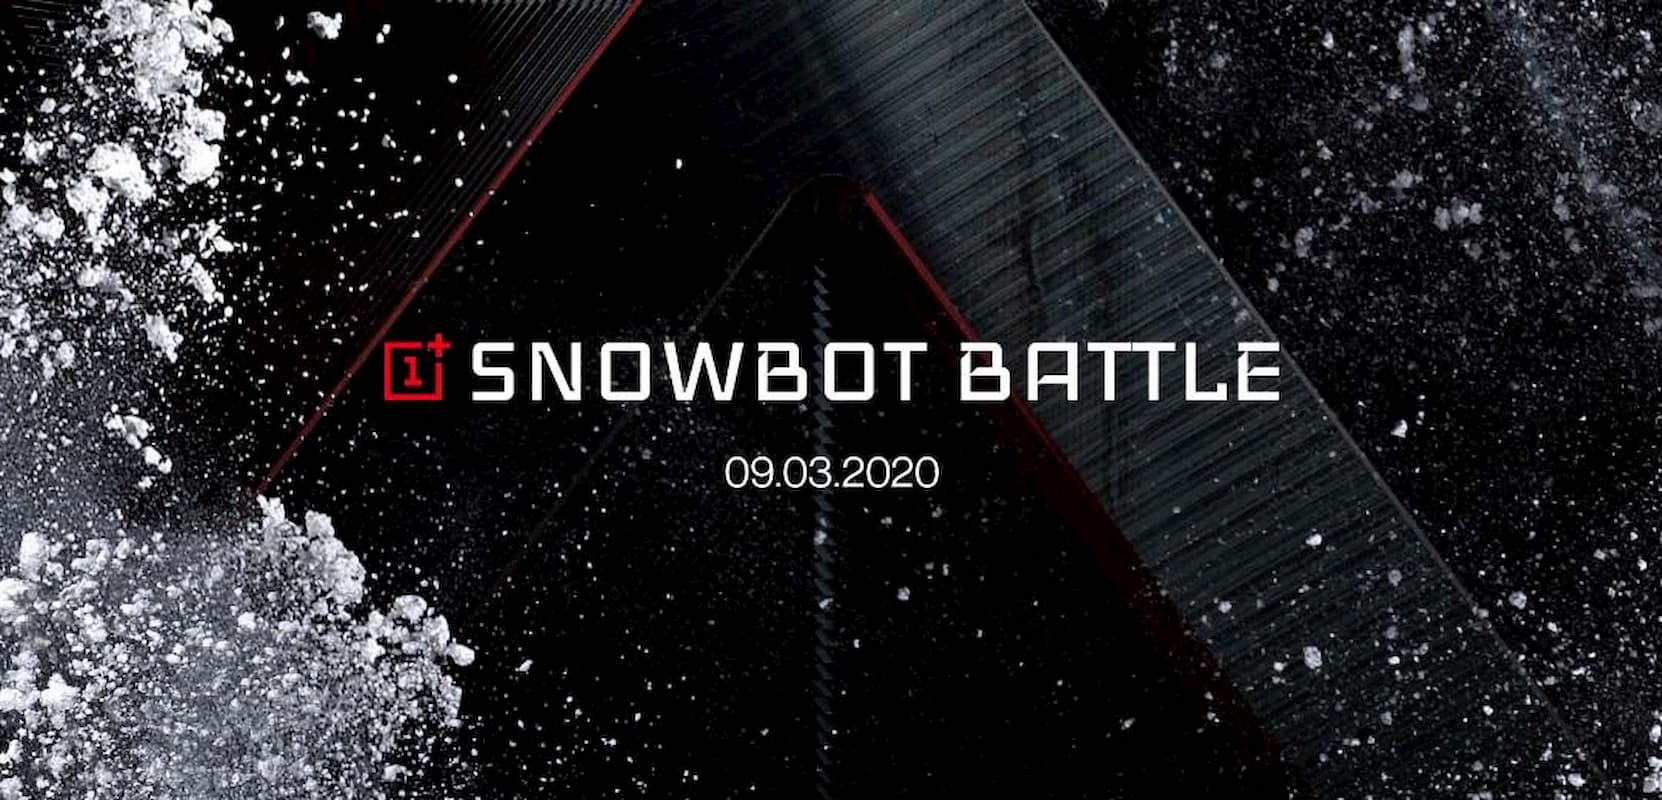 OnePlus rozpoczyna ogromną bitwę na śnieżki: użytkownicy kontra roboty 5G